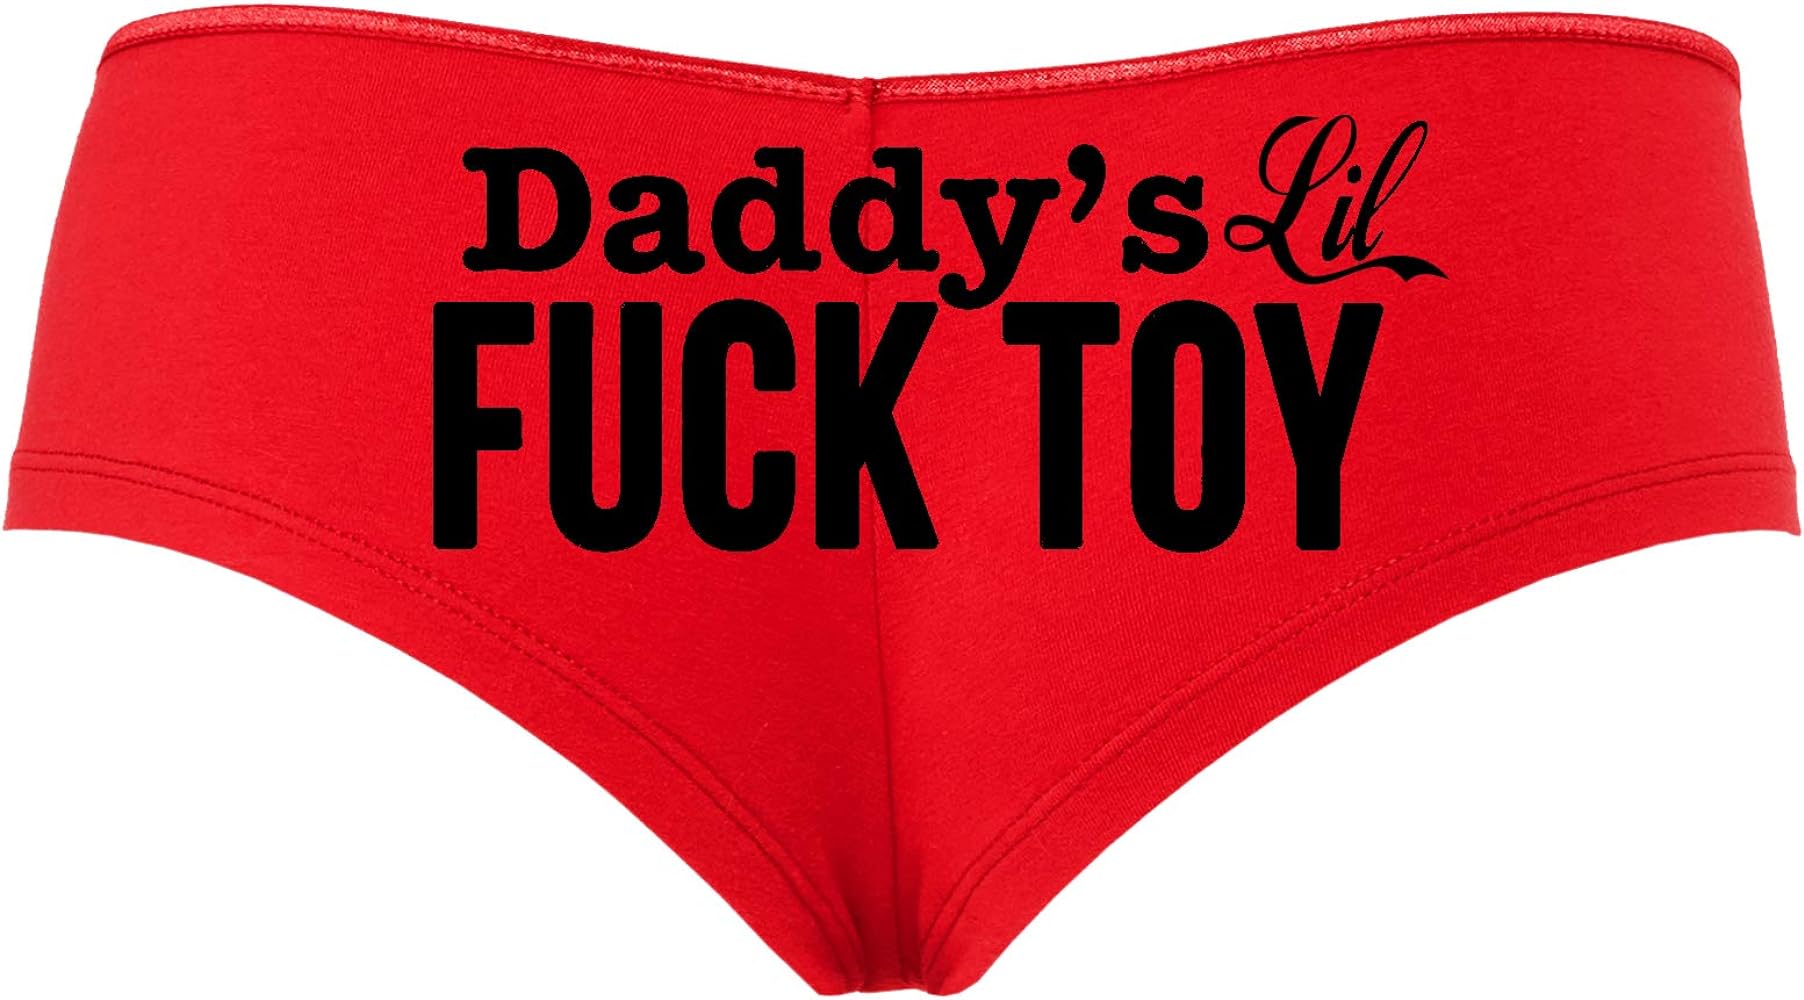 Daddys Little Sex Toy nbugil hot